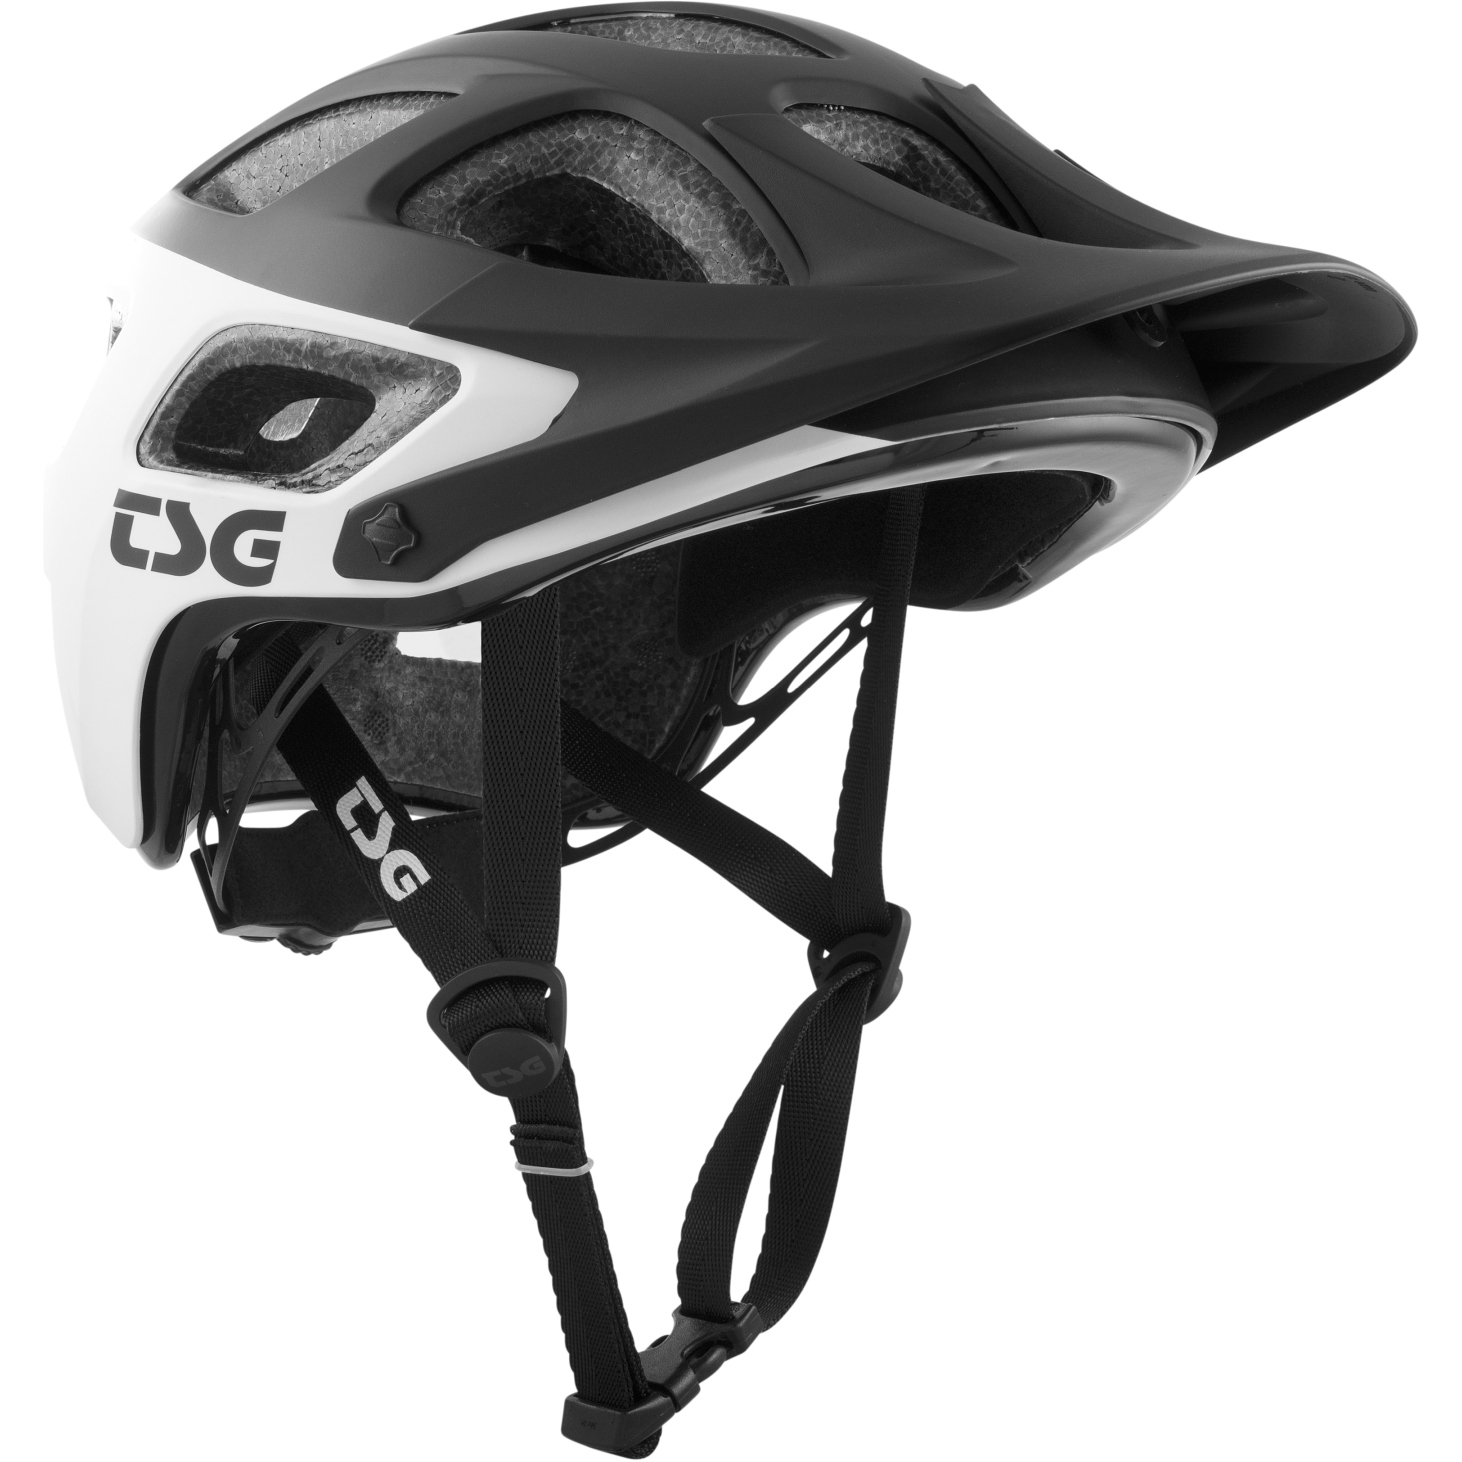 Produktbild von TSG Seek Graphic Design Helm - block white/schwarz